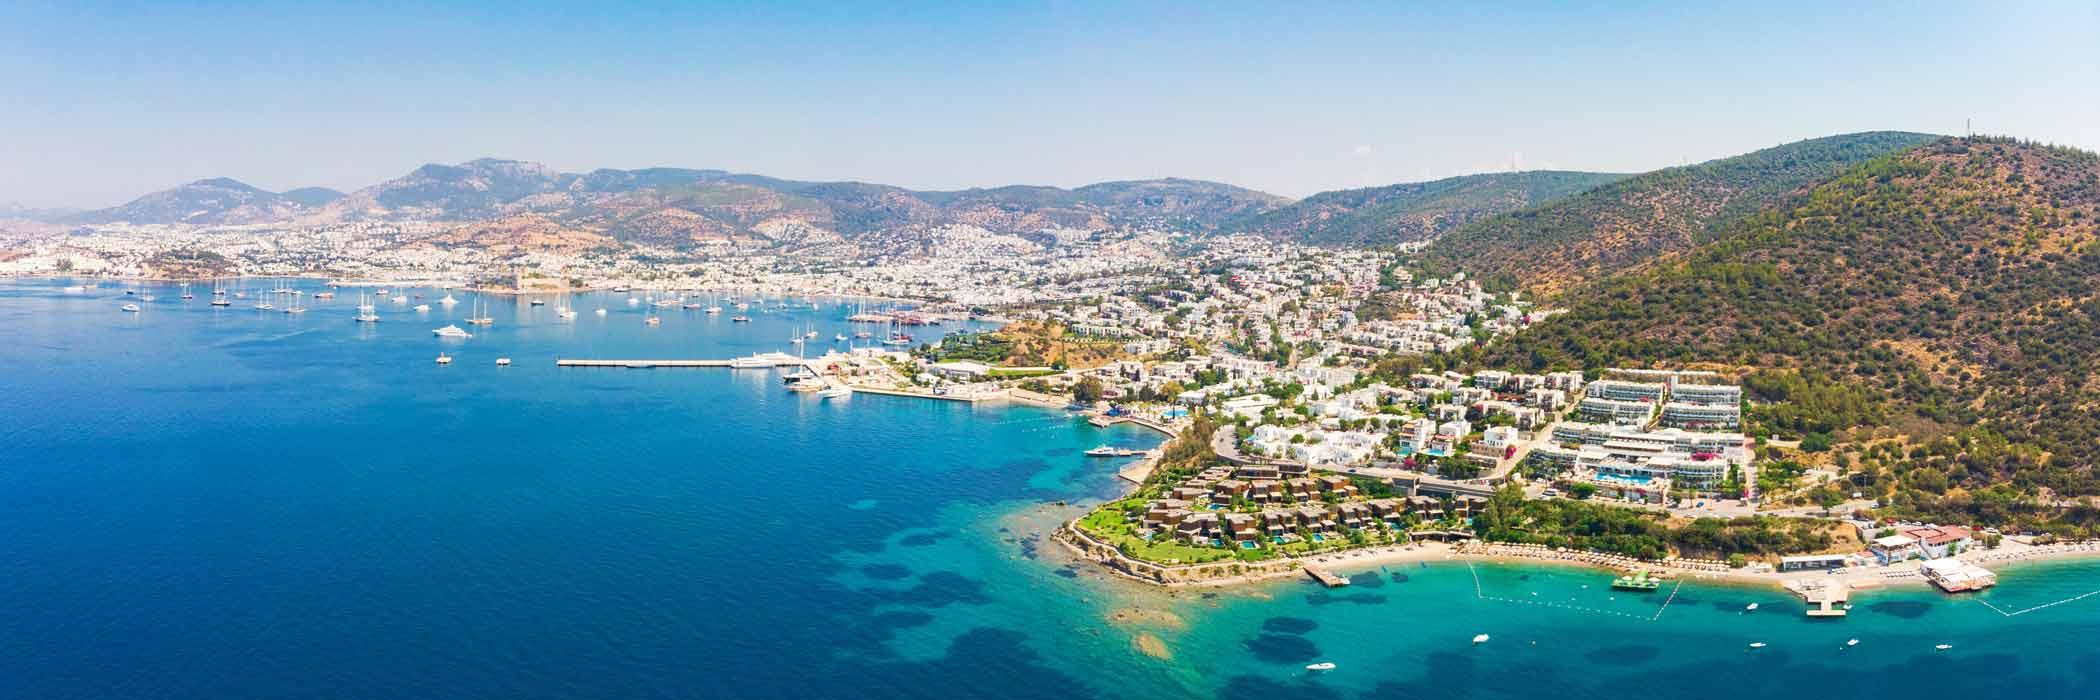 Bodrum - Jet2 holidays to Turkey